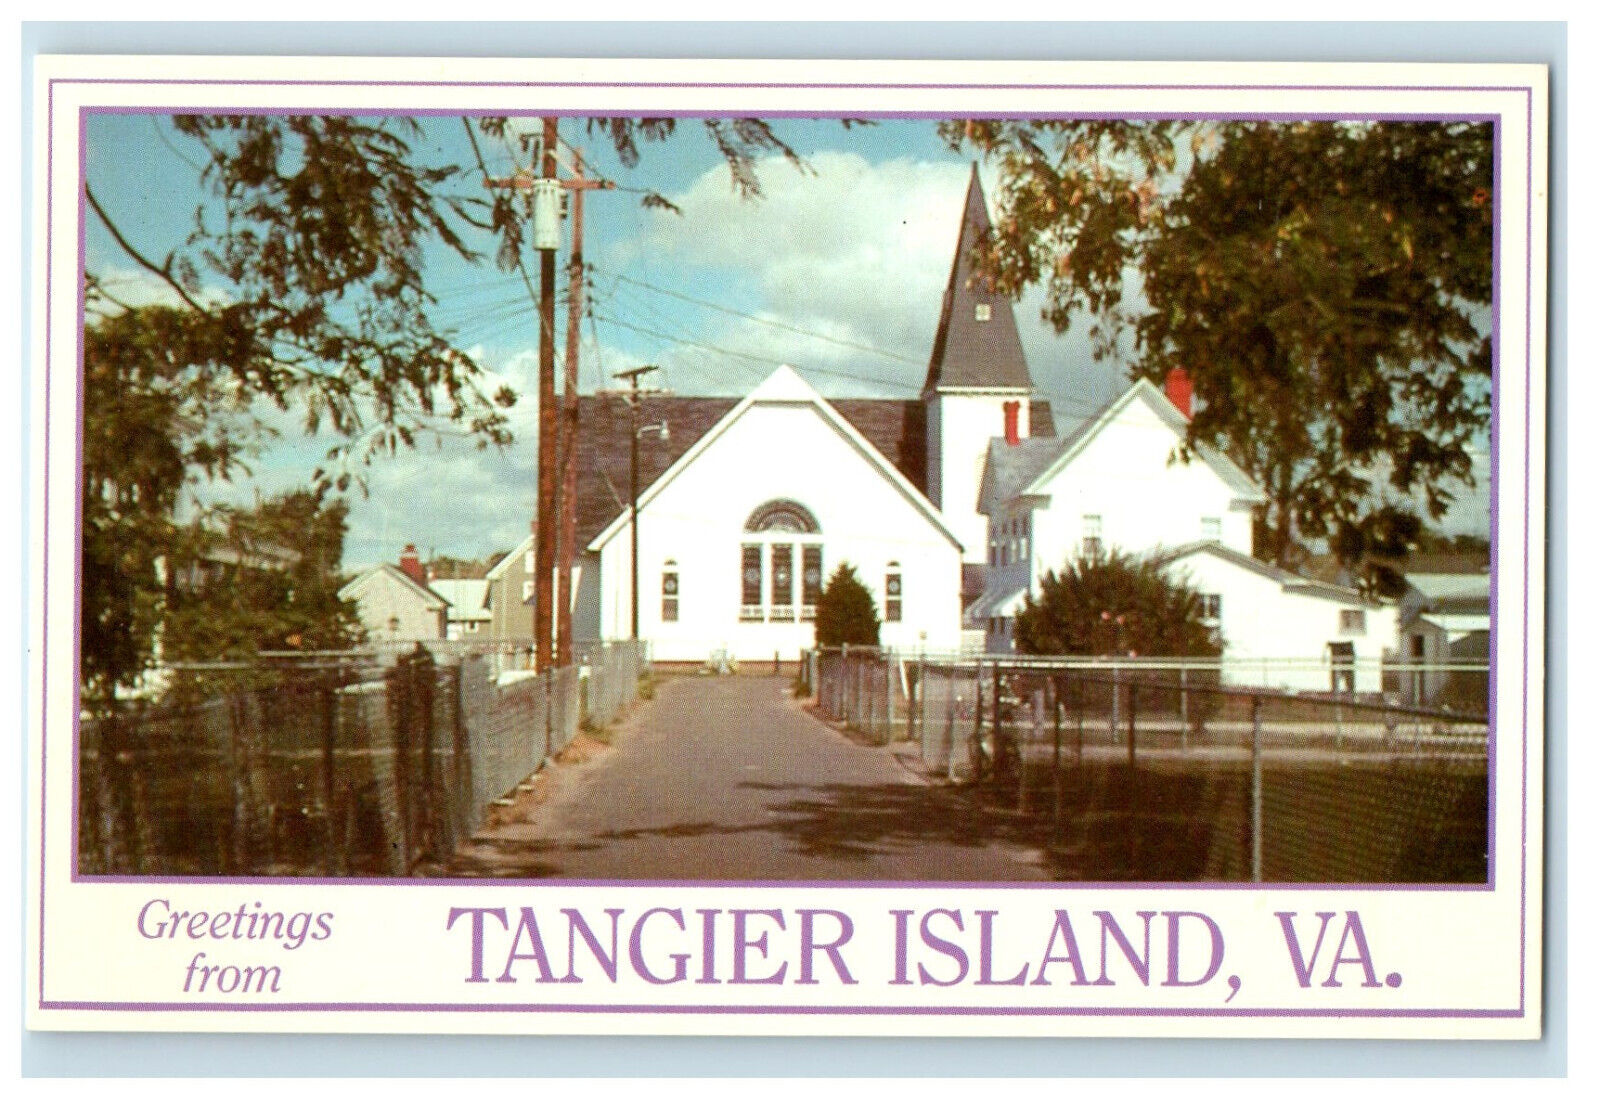 c1940 Swain Memorial Methodist Church, Greetings from Tangier Island VA Postcard